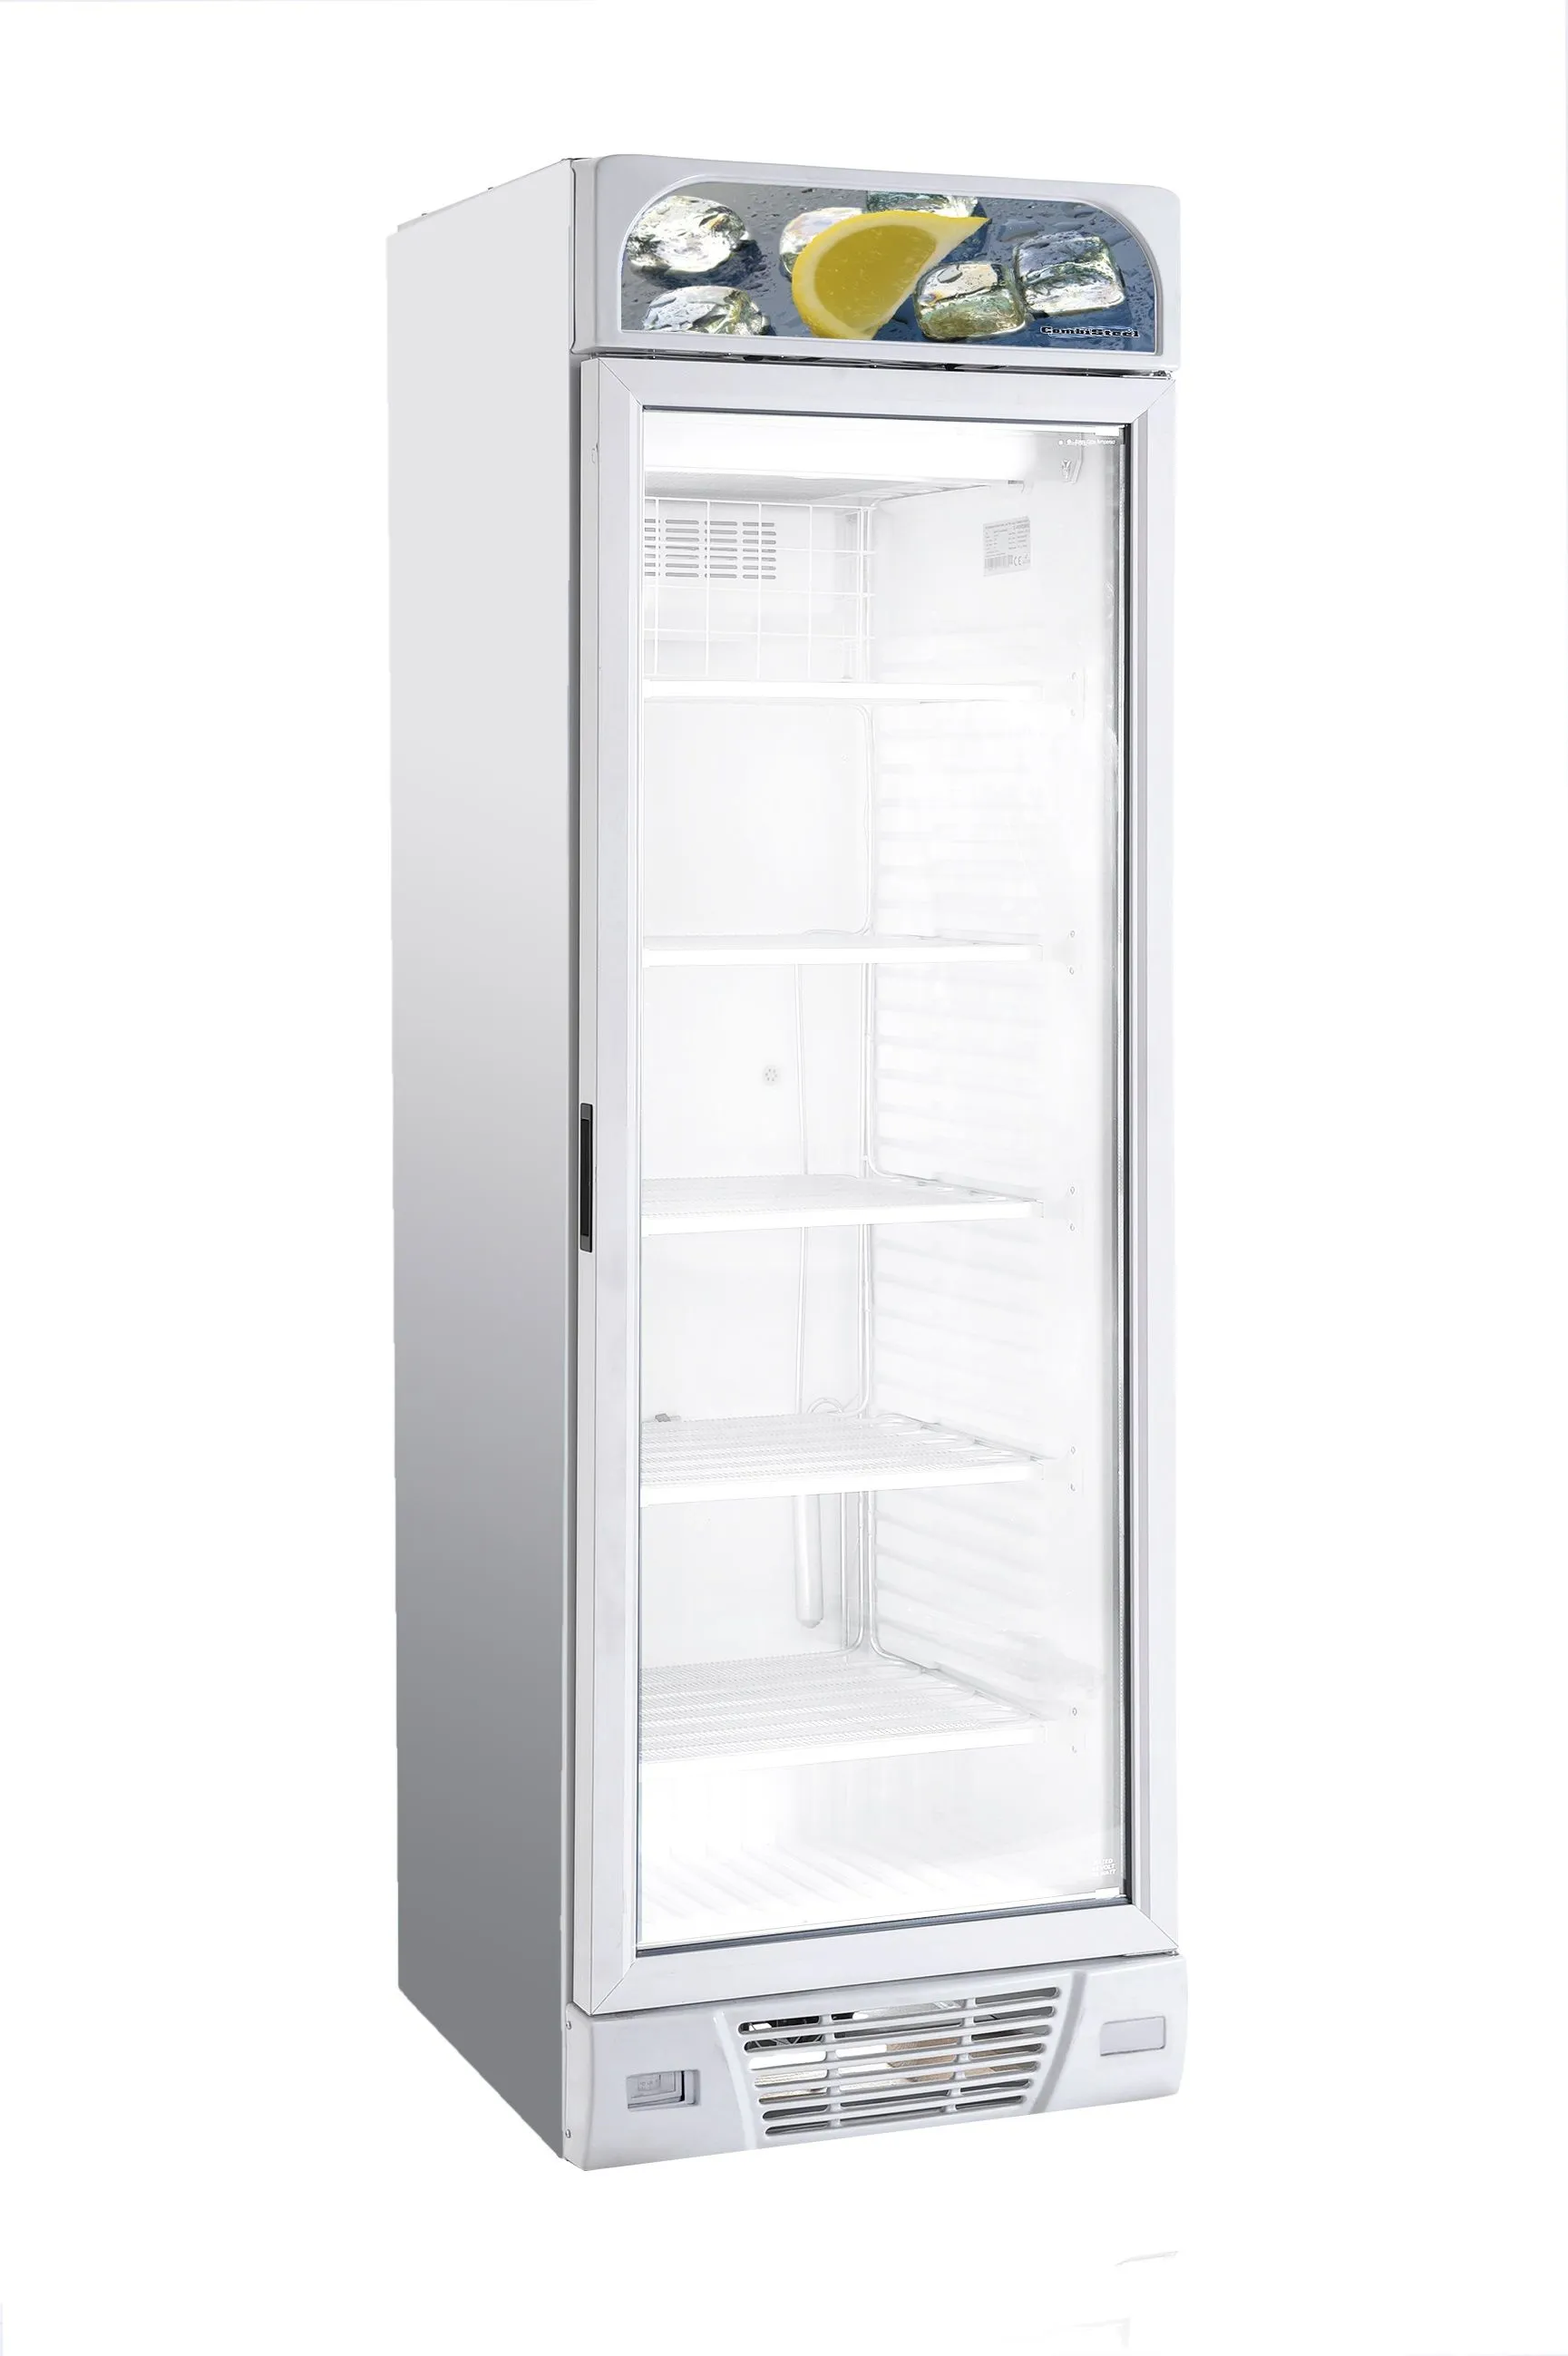 CombiSteel Single Glass Door Display Freezer 382 Litre